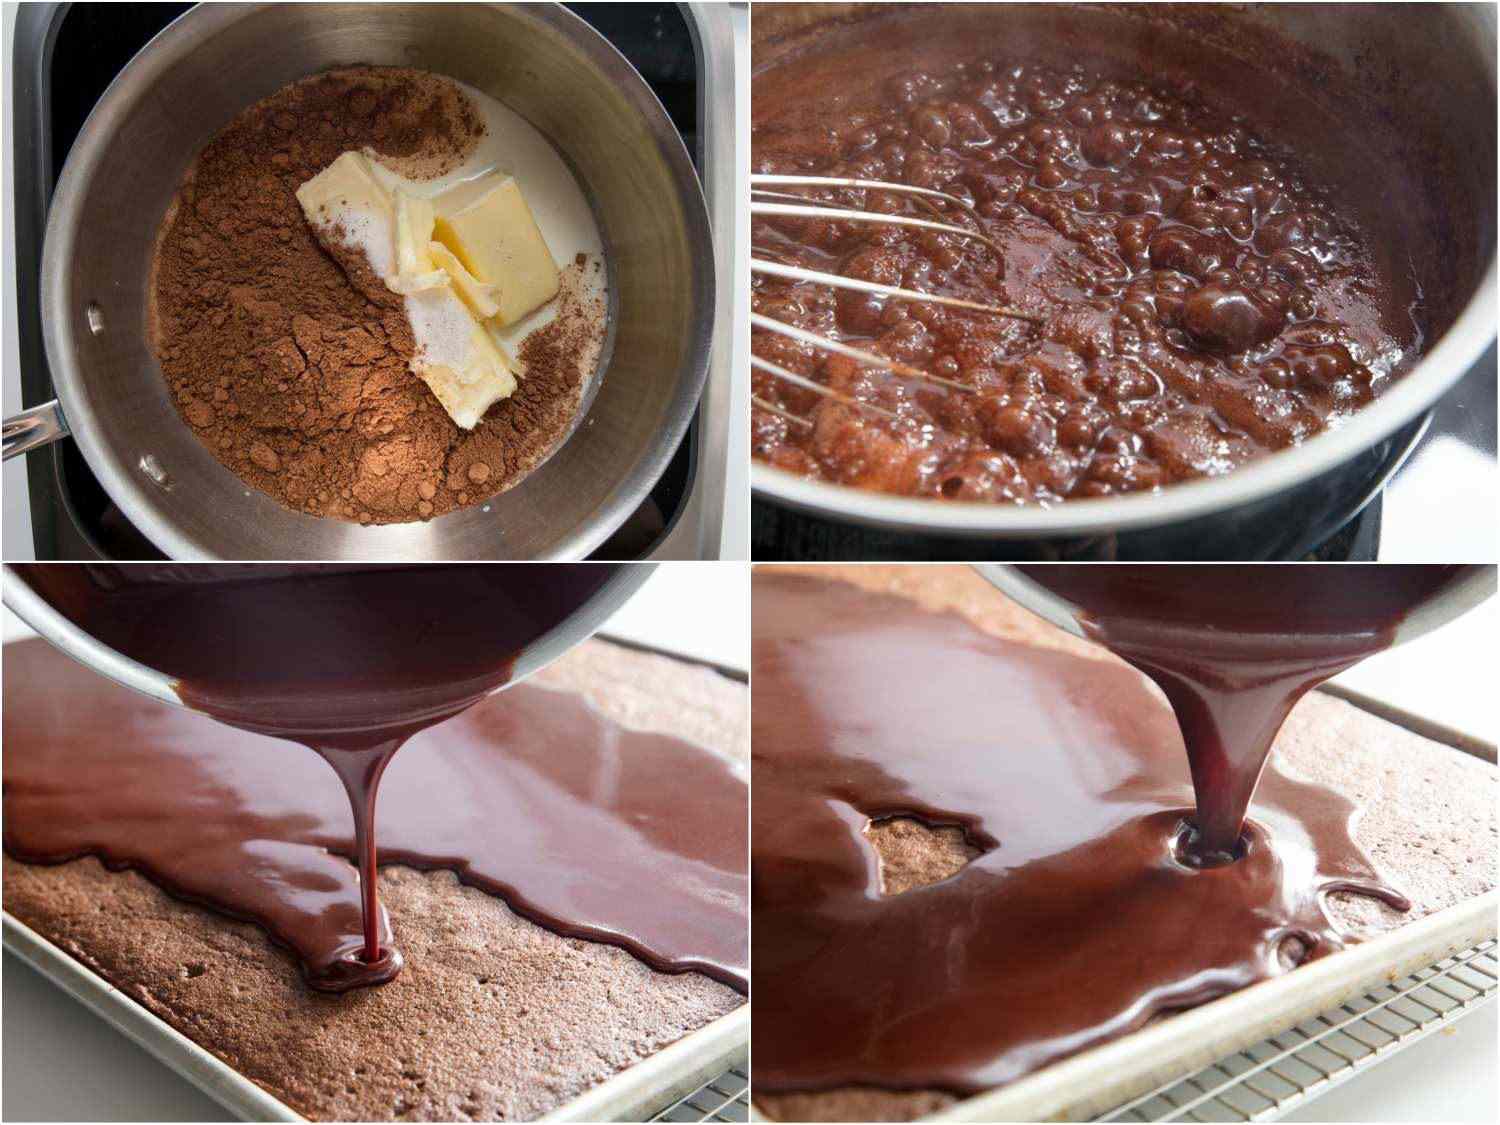 为德克萨斯薄片蛋糕制作釉料的照片拼贴:黄油、可可粉和牛奶在酱汁中;搅拌起泡釉料;在蛋糕上浇釉